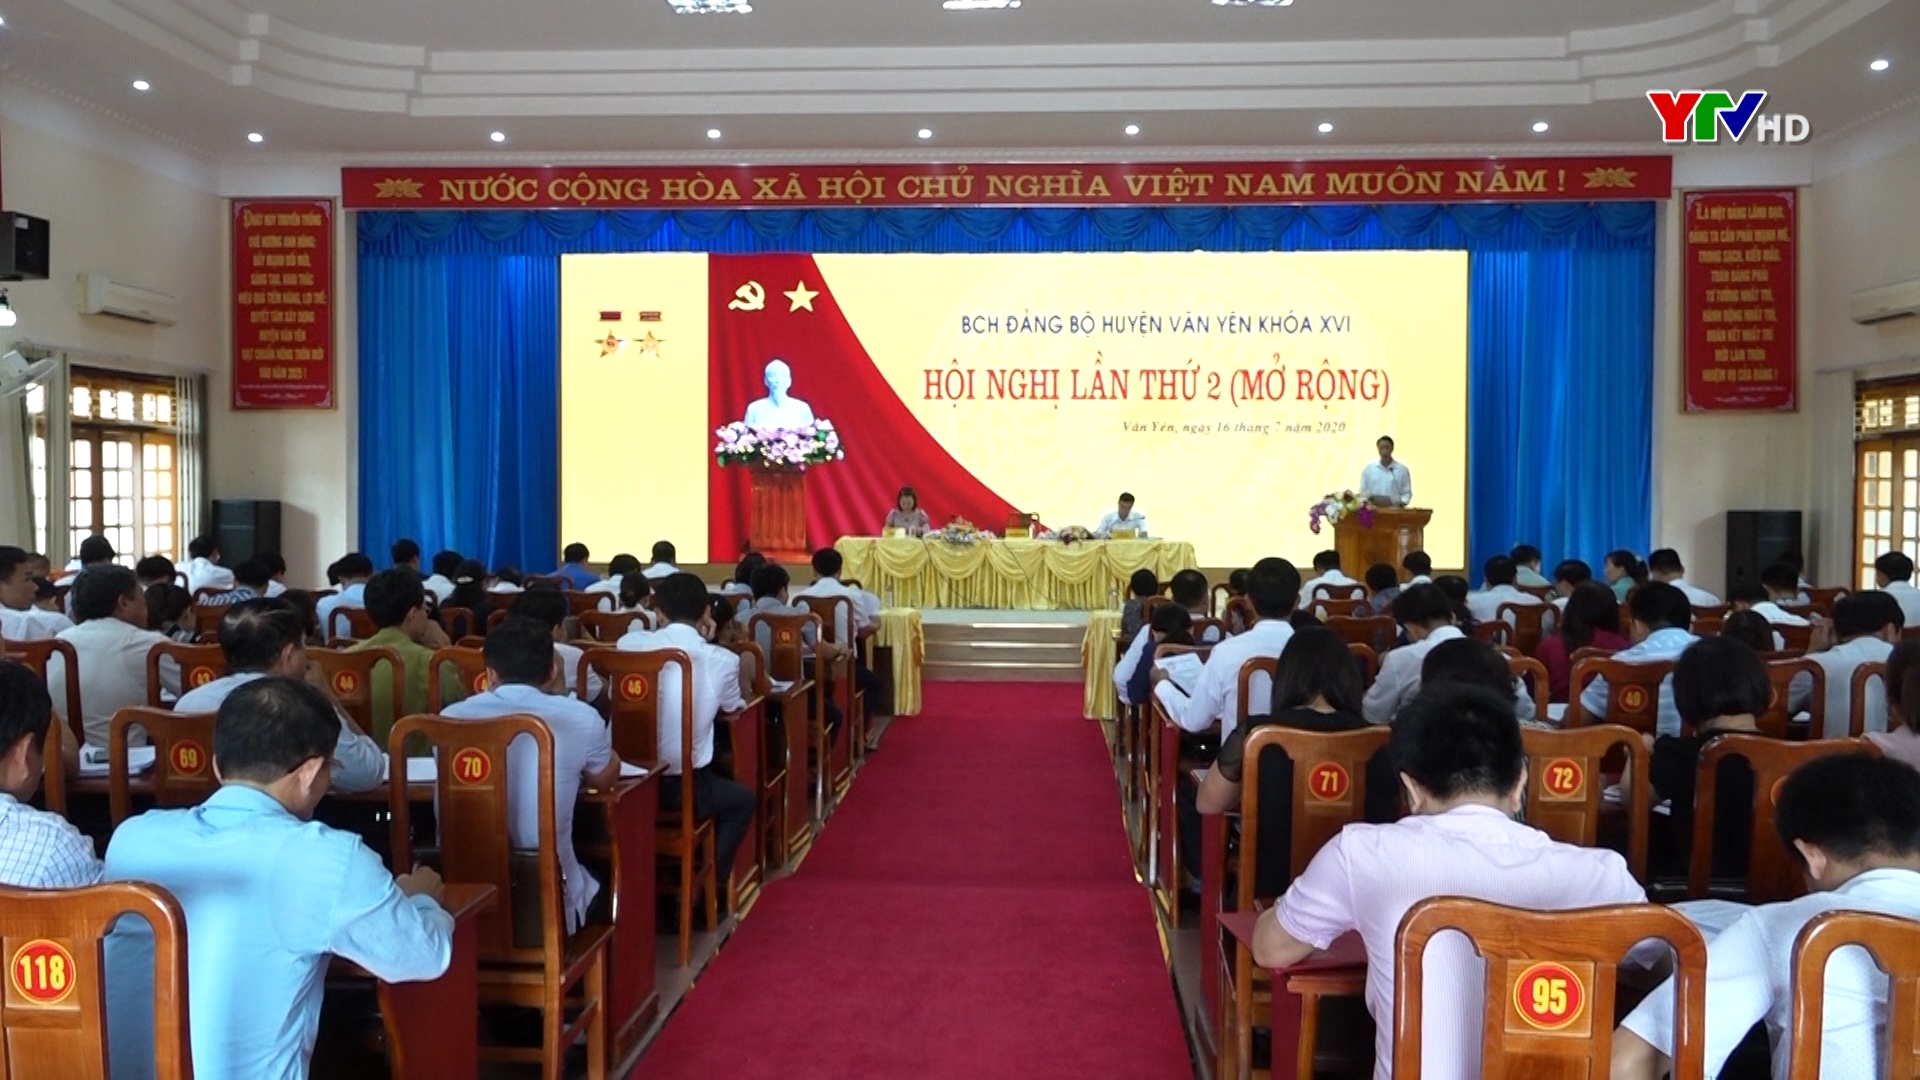 Hội nghị lần thứ 2 - Ban Chấp hành Đảng bộ huyện Văn Yên khóa XVI